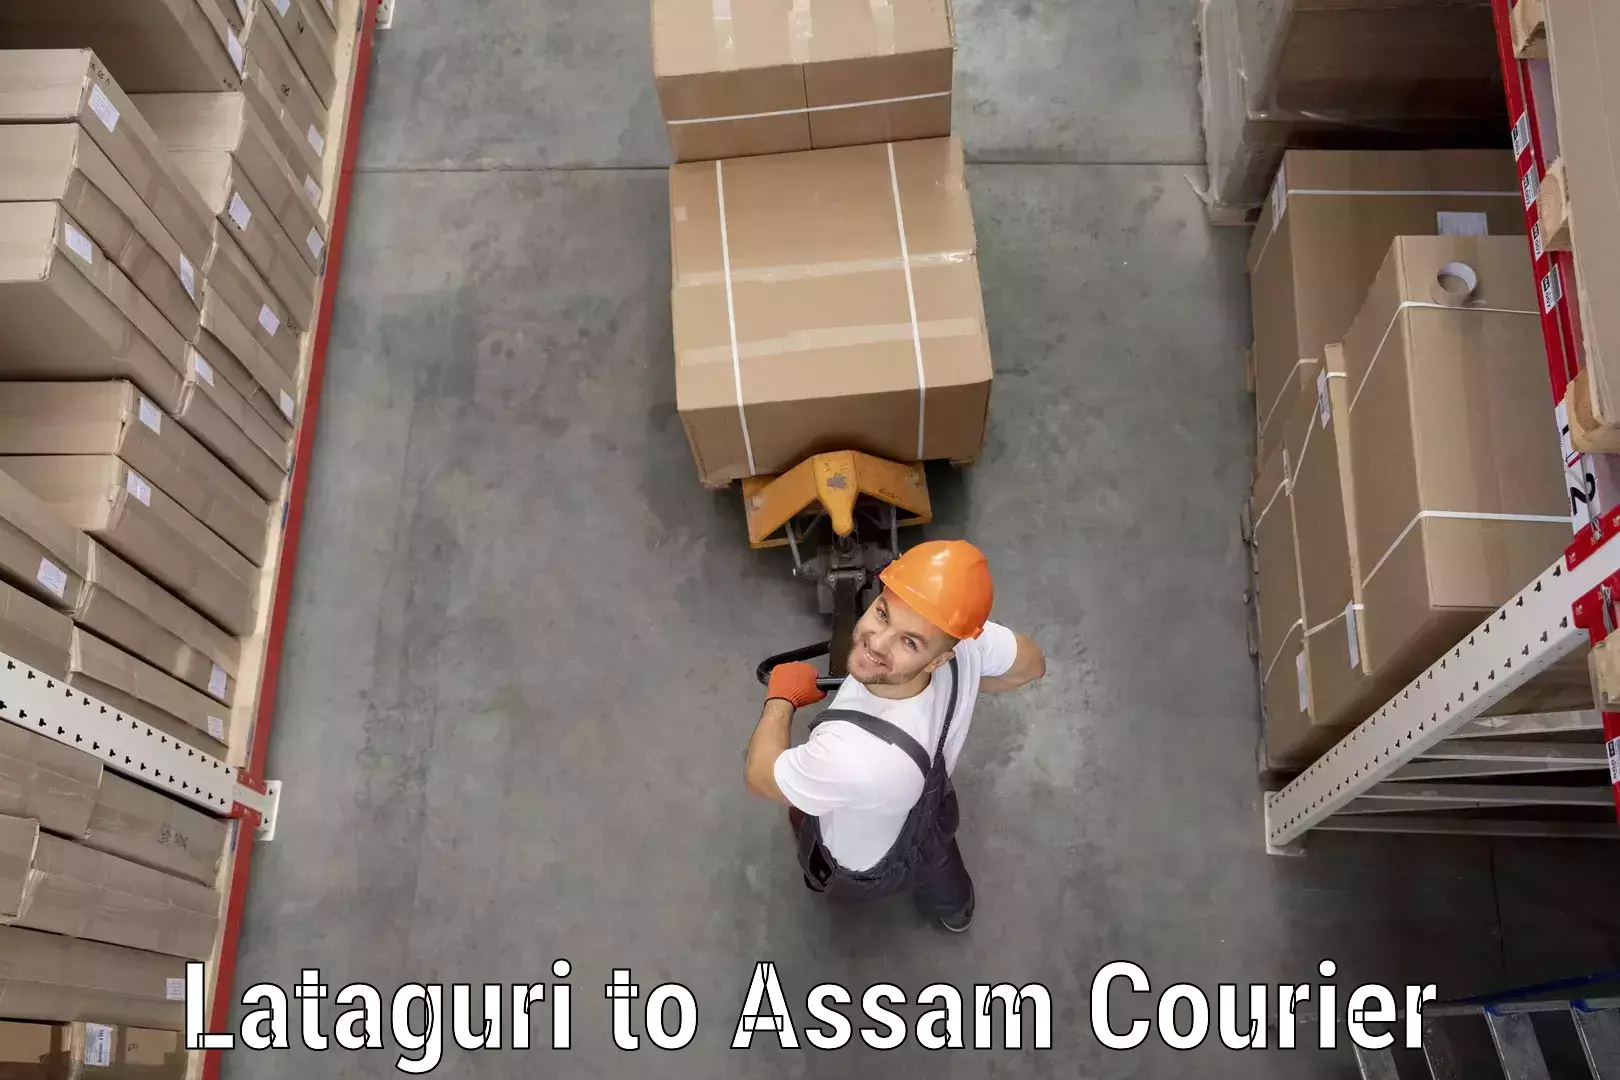 Courier rate comparison Lataguri to Assam